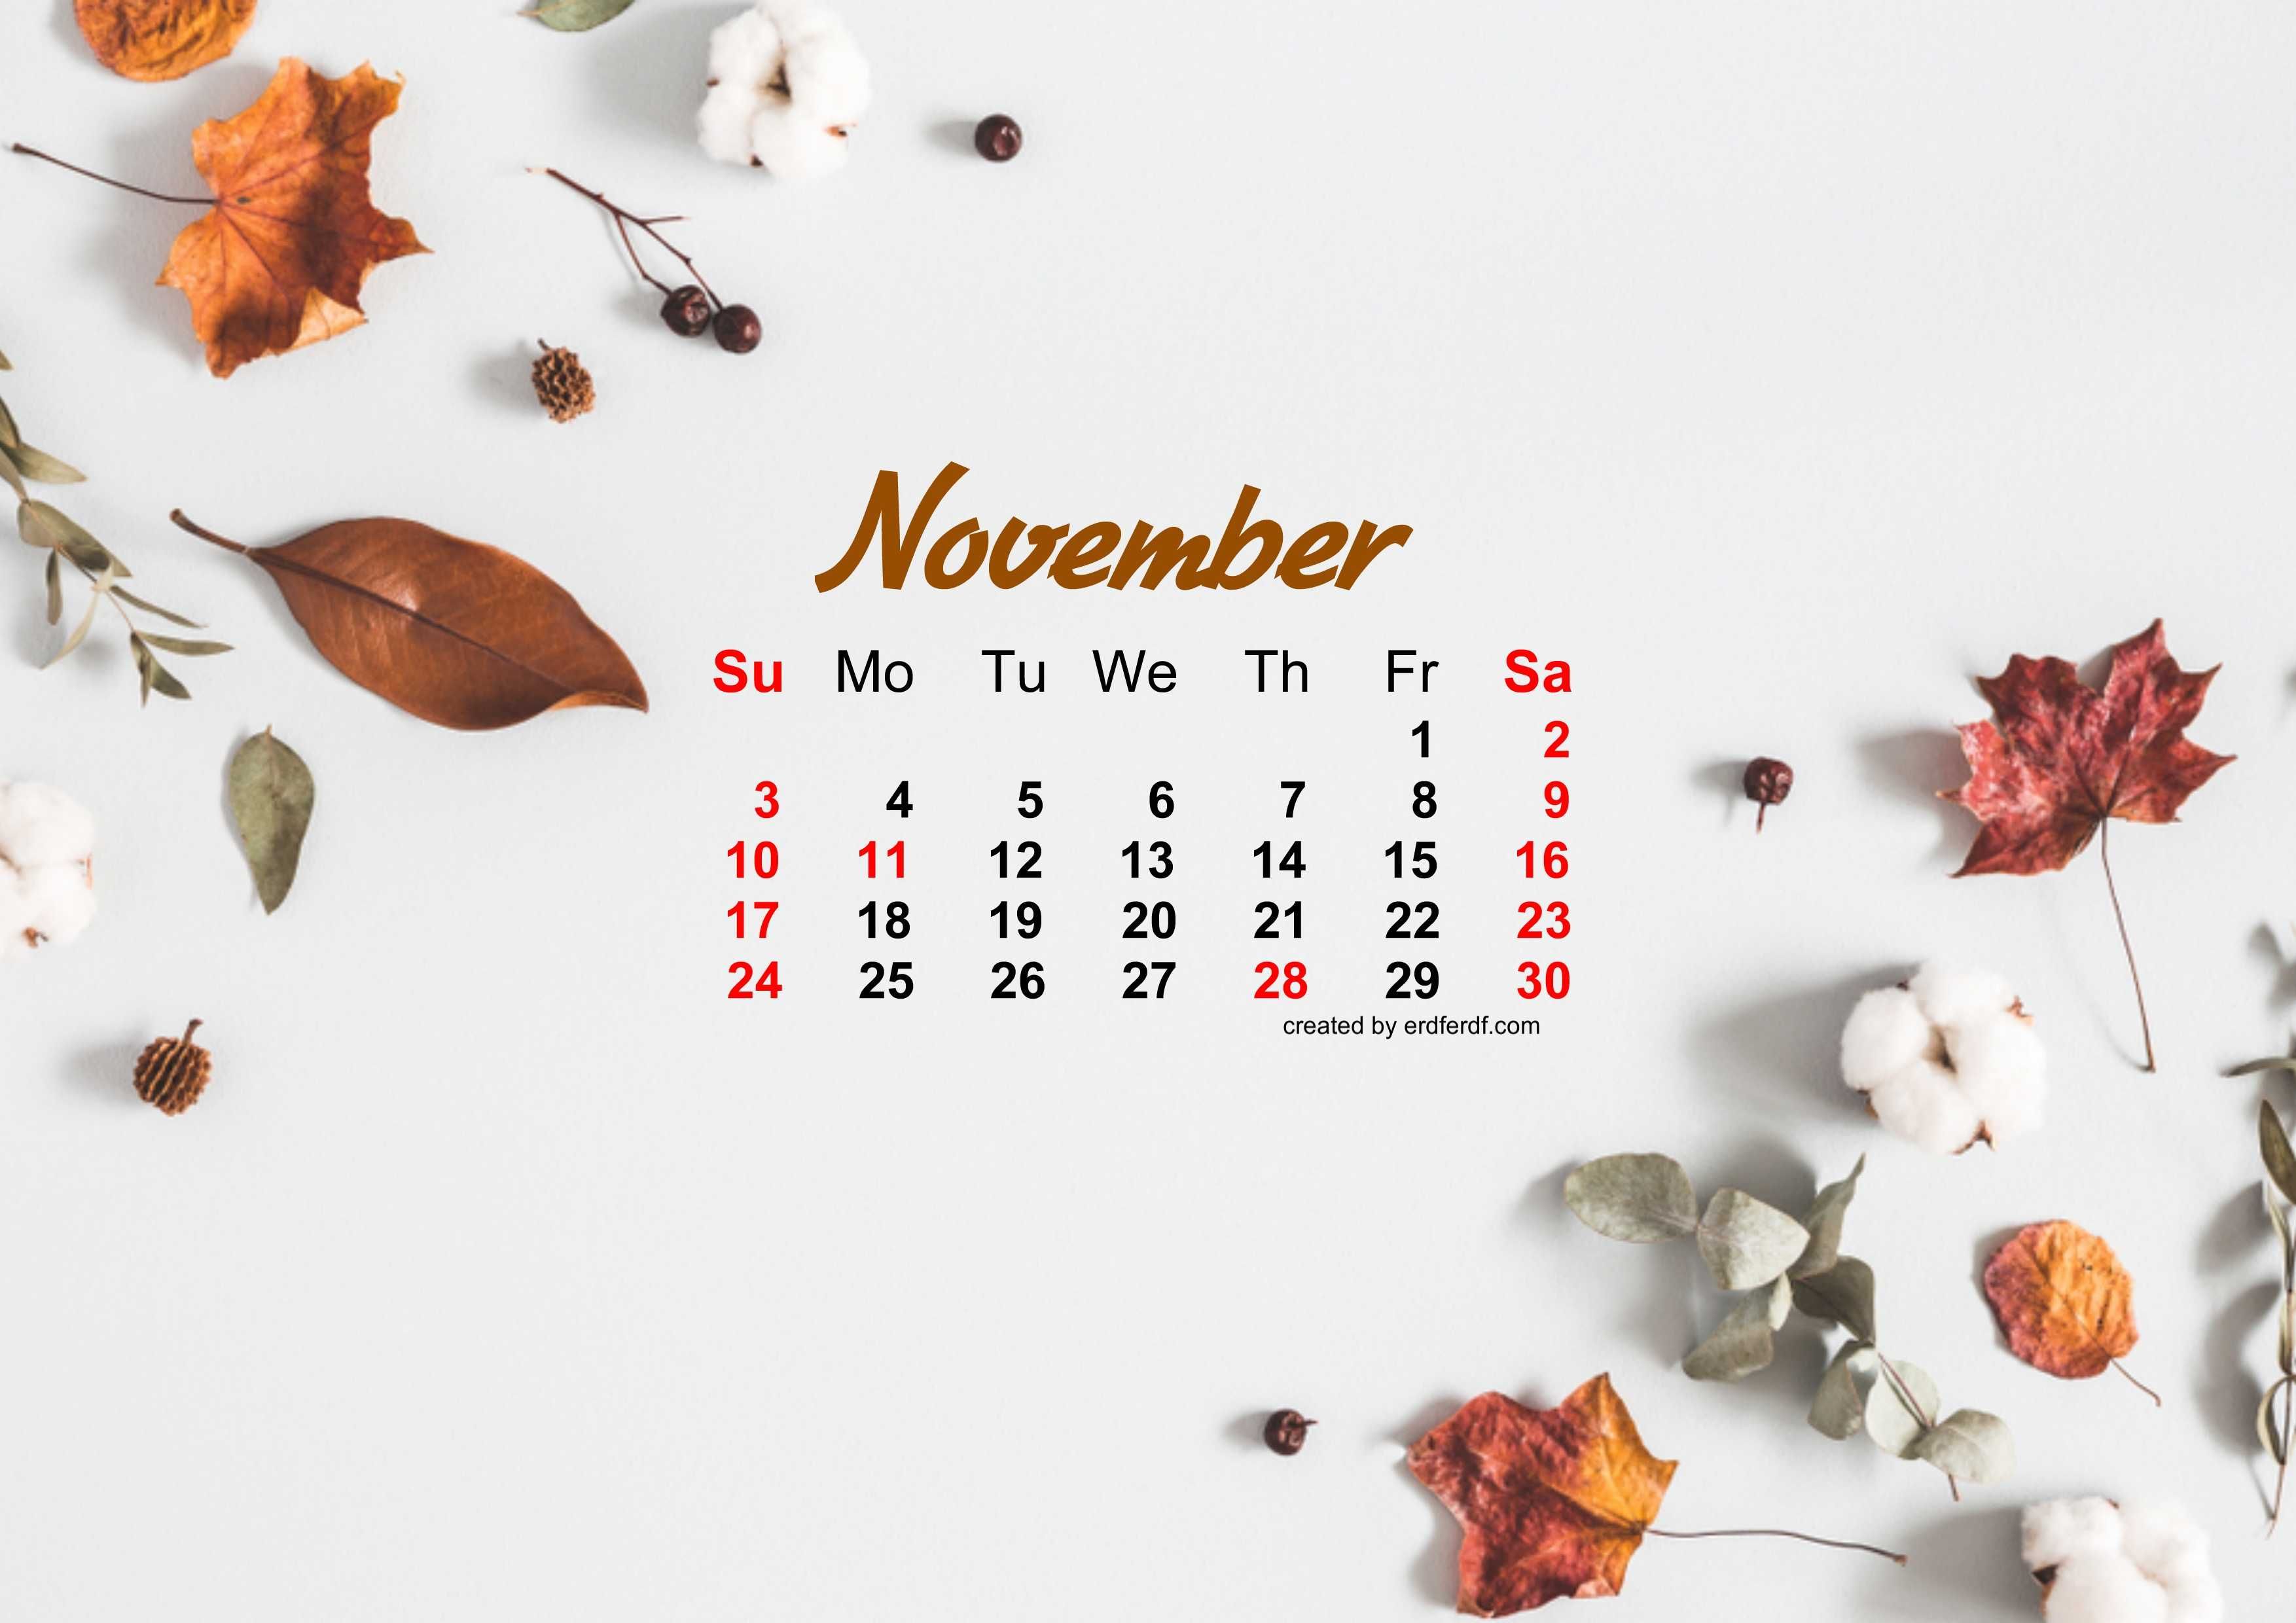 Lịch tháng 11 năm 2019 với hình nền được thiết kế tinh tế sẽ đem đến cho bạn những kỷ niệm và trải nghiệm đáng nhớ. Hưởng lợi từ việc sử dụng hình nền đẹp và trang nhã, bạn sẽ có một mùa thu lý tưởng để đón nhận những thay đổi tích cực trong cuộc sống.